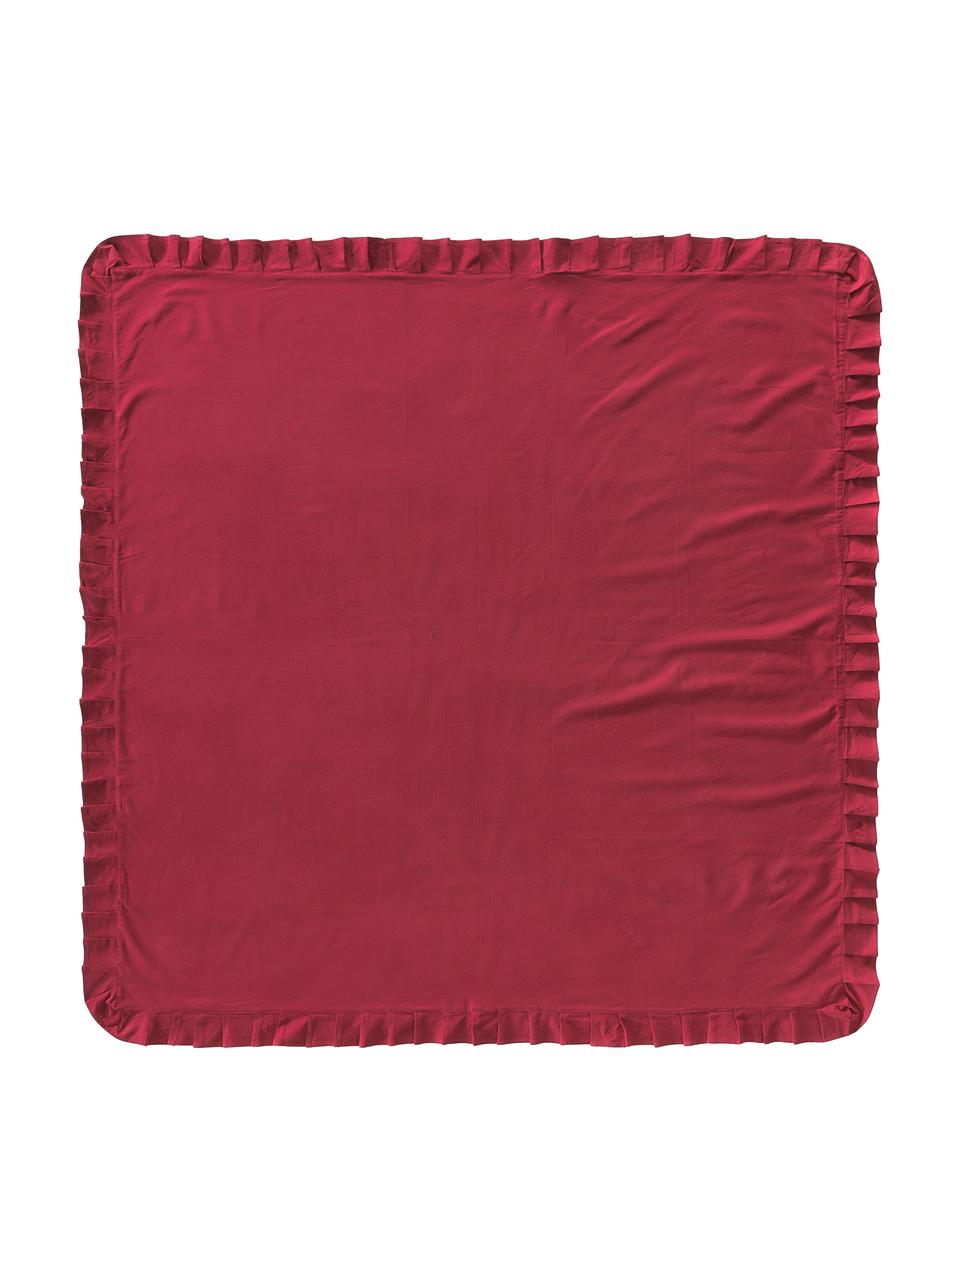 Tischdecke Chambray mit Rüschen, 100 % Baumwolle, Rot, Für 4 - 6 Personen (B 160 x L 160 cm)